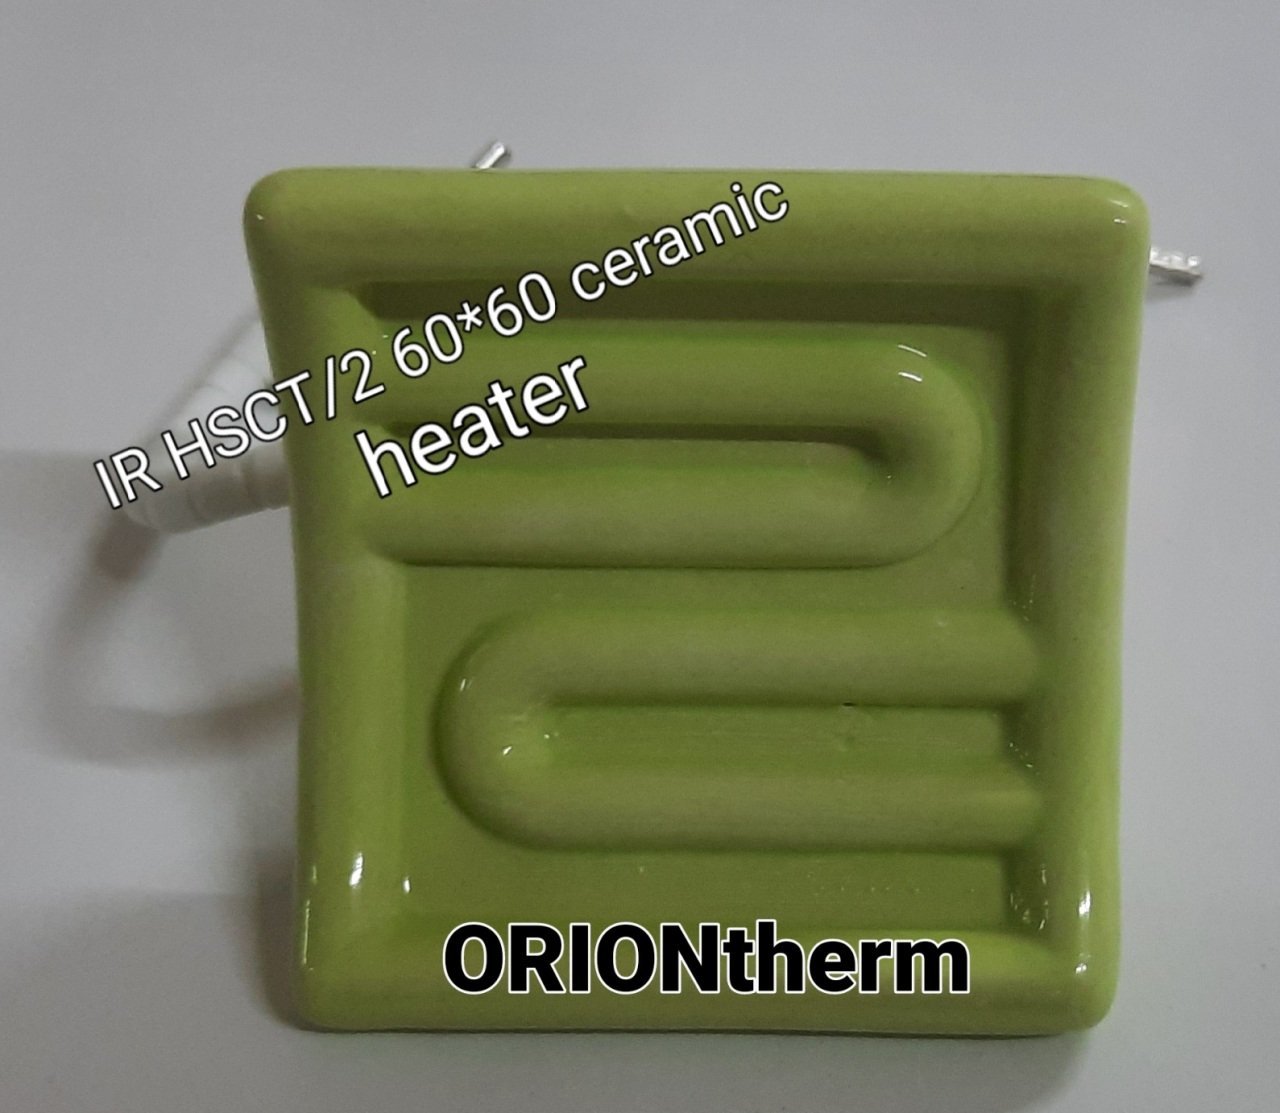 HSCT/2 60*60 orion seramik rezistans